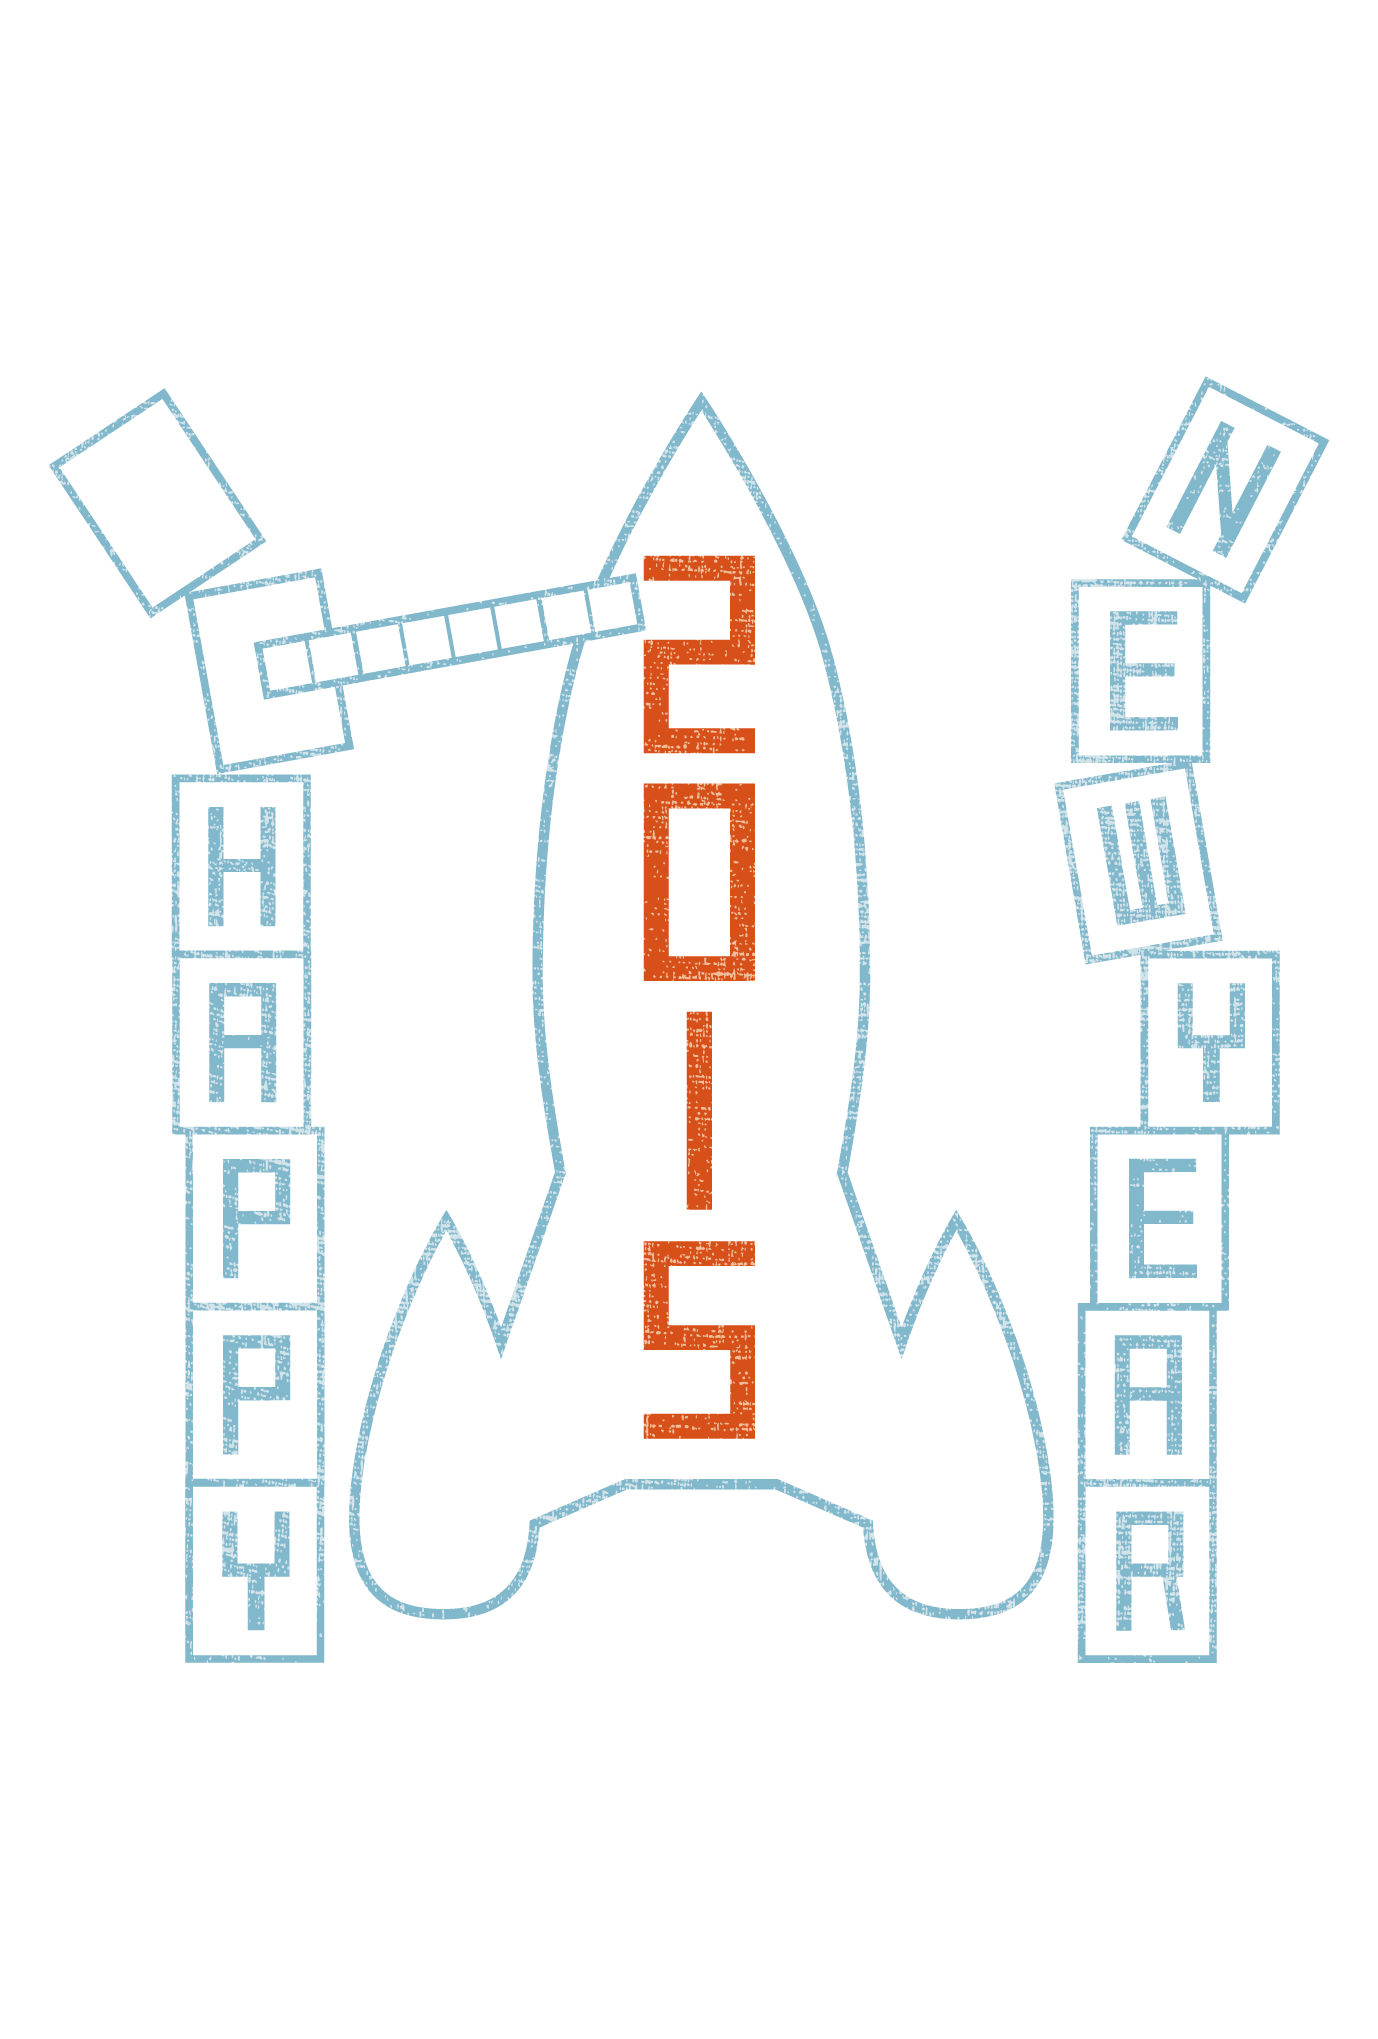 2015年賀状02-1：New year rocket / 1のダウンロード画像